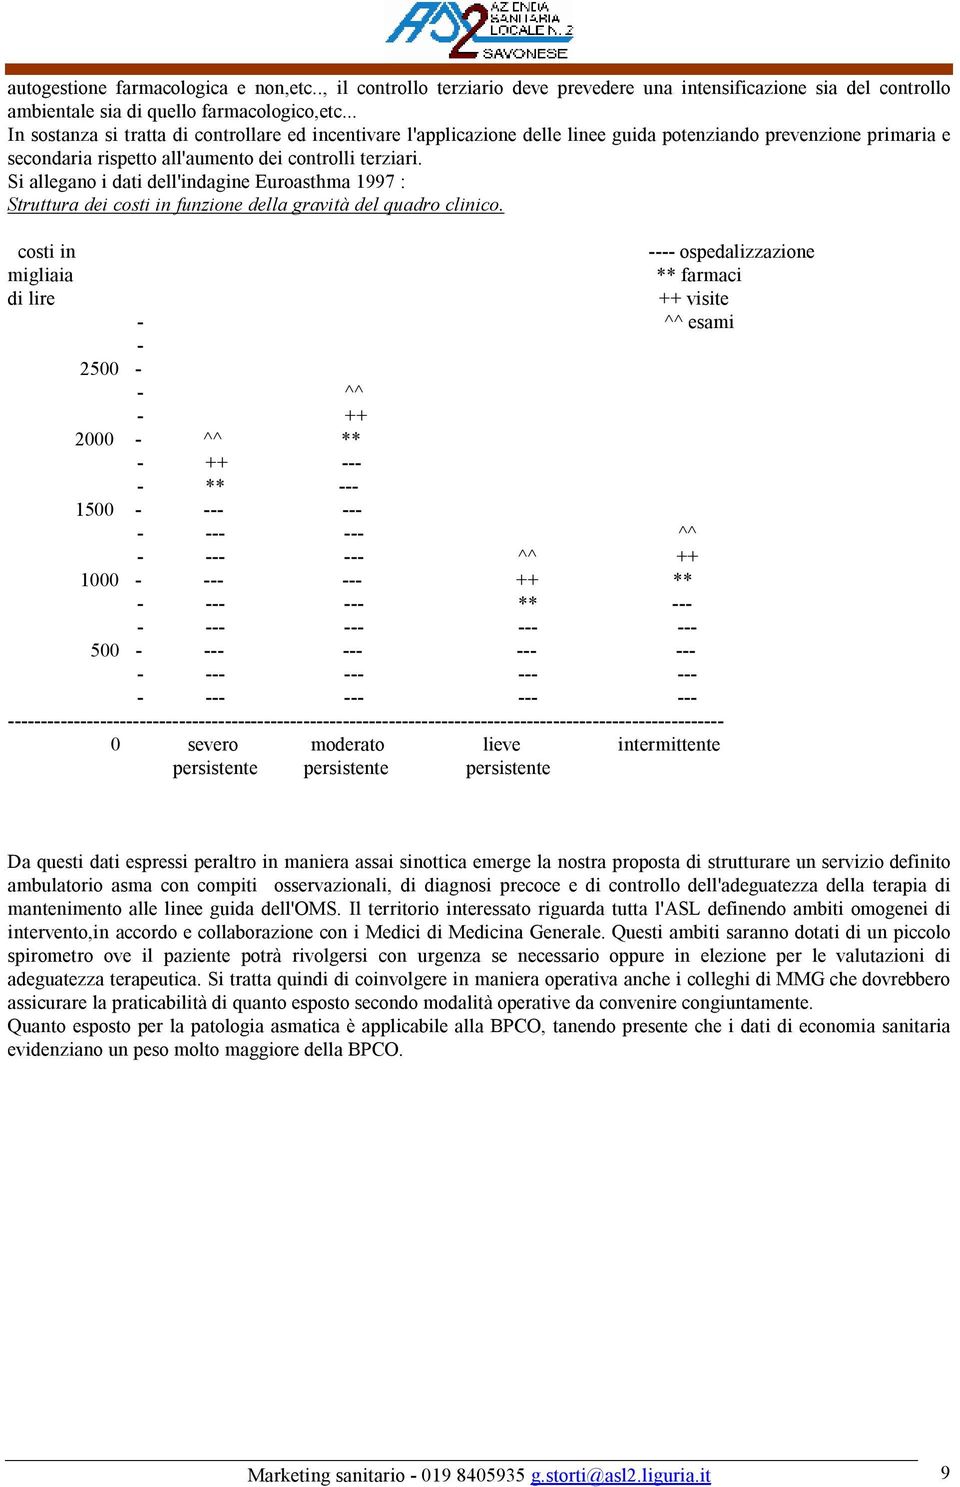 Si allegano i dati dell'indagine Euroasthma 1997 : Struttura dei costi in funzione della gravità del quadro clinico.